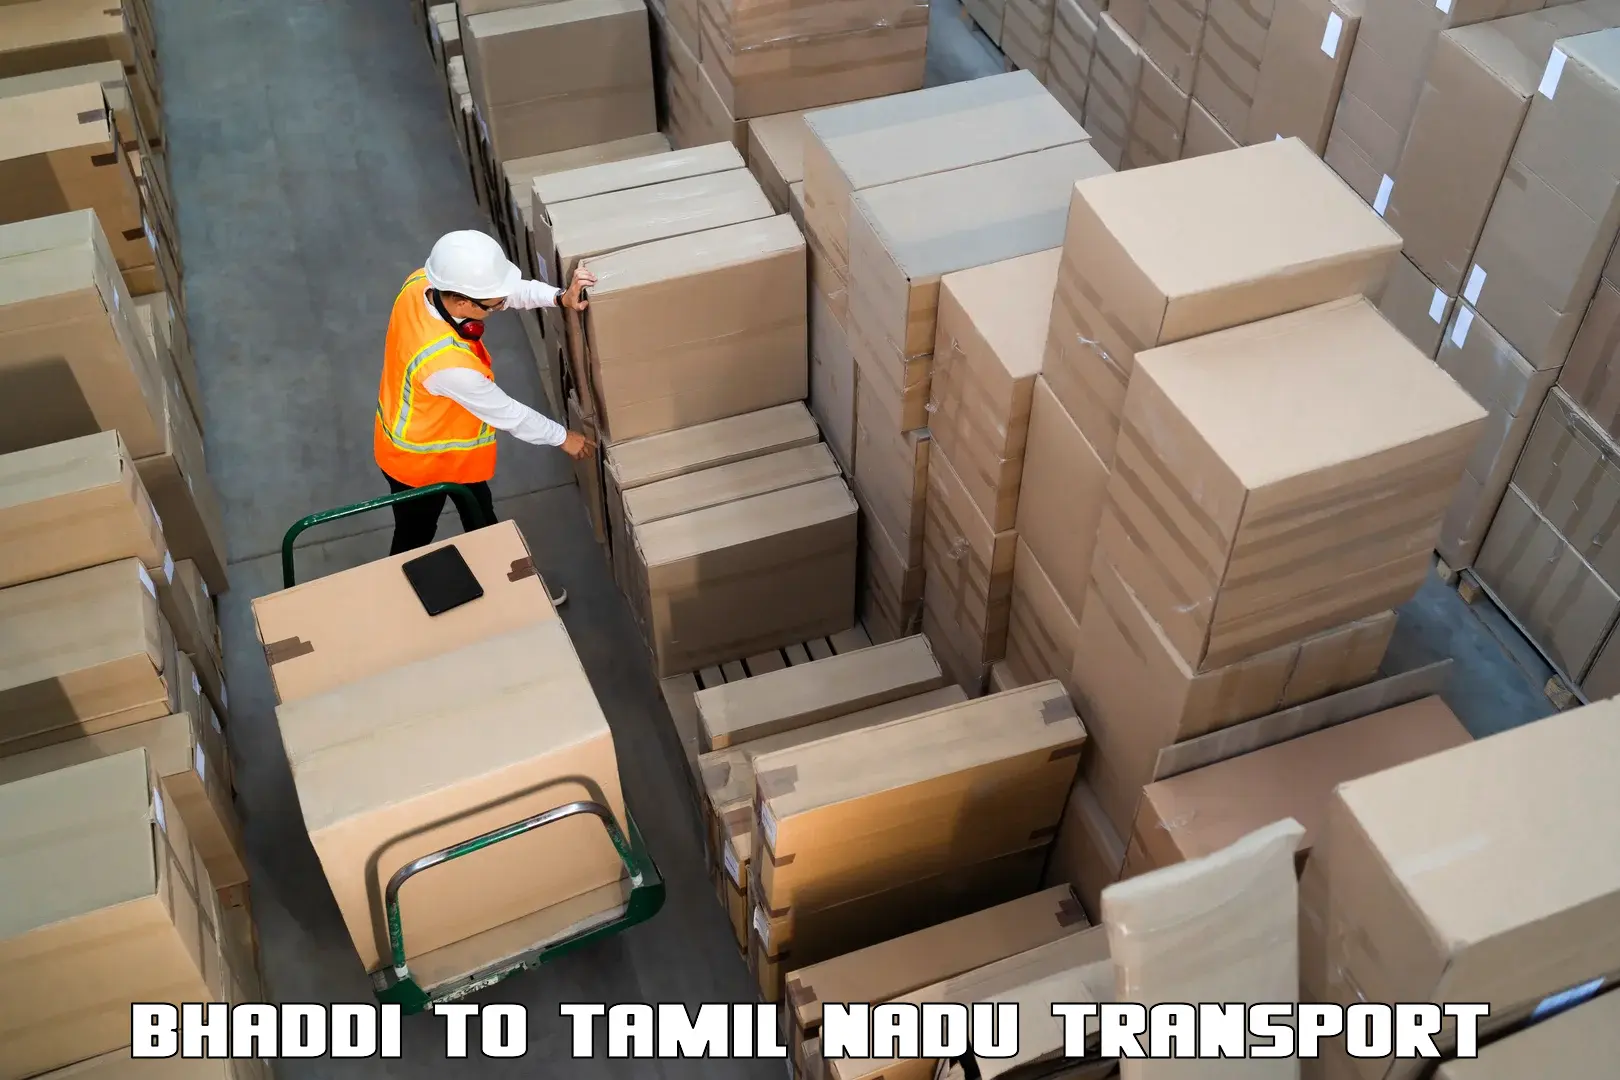 Bike transfer Bhaddi to Tamil Nadu